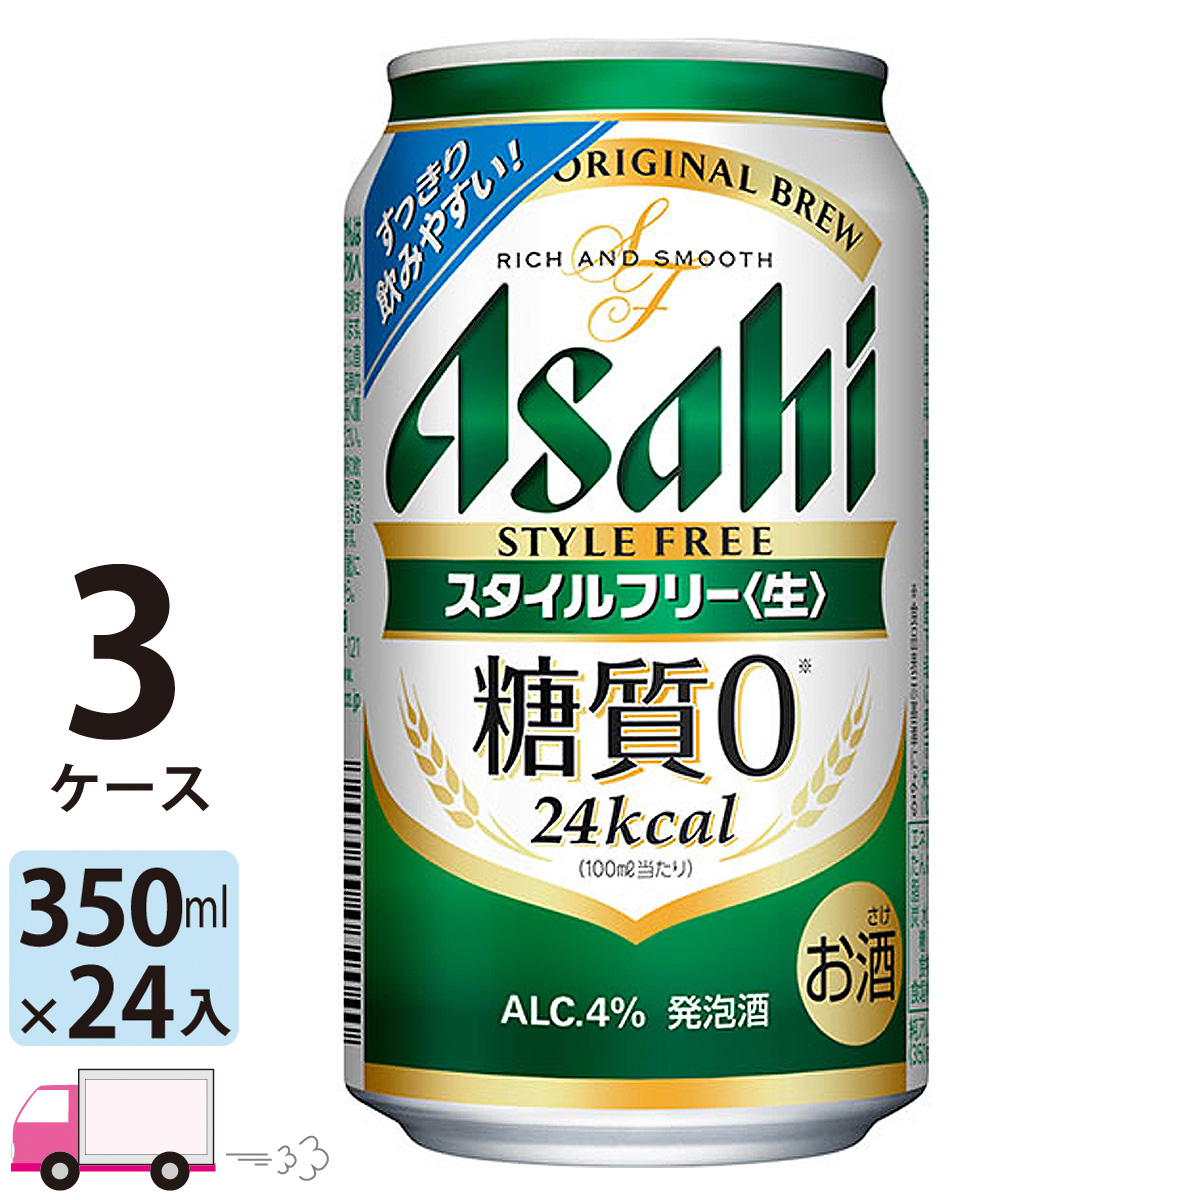 ケースは】 ビール beer 送料無料 アサヒ 生ビール黒生 350ml×3ケース